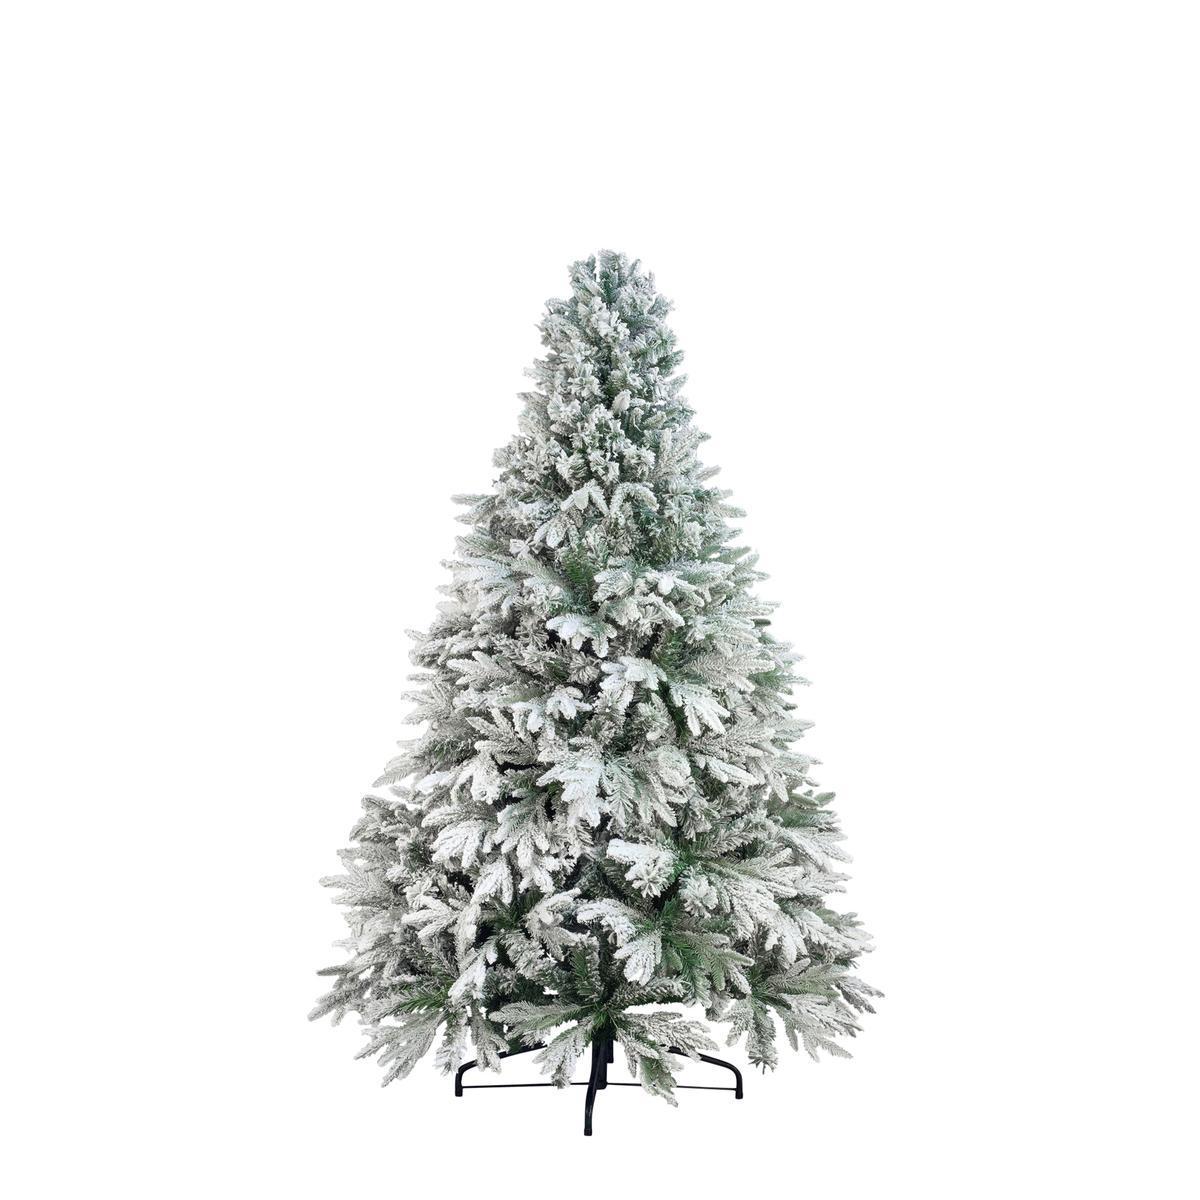 Sapin de Noël blizzard - Plastique et métal - Ø 105 x H 180 cm - Vert et blanc